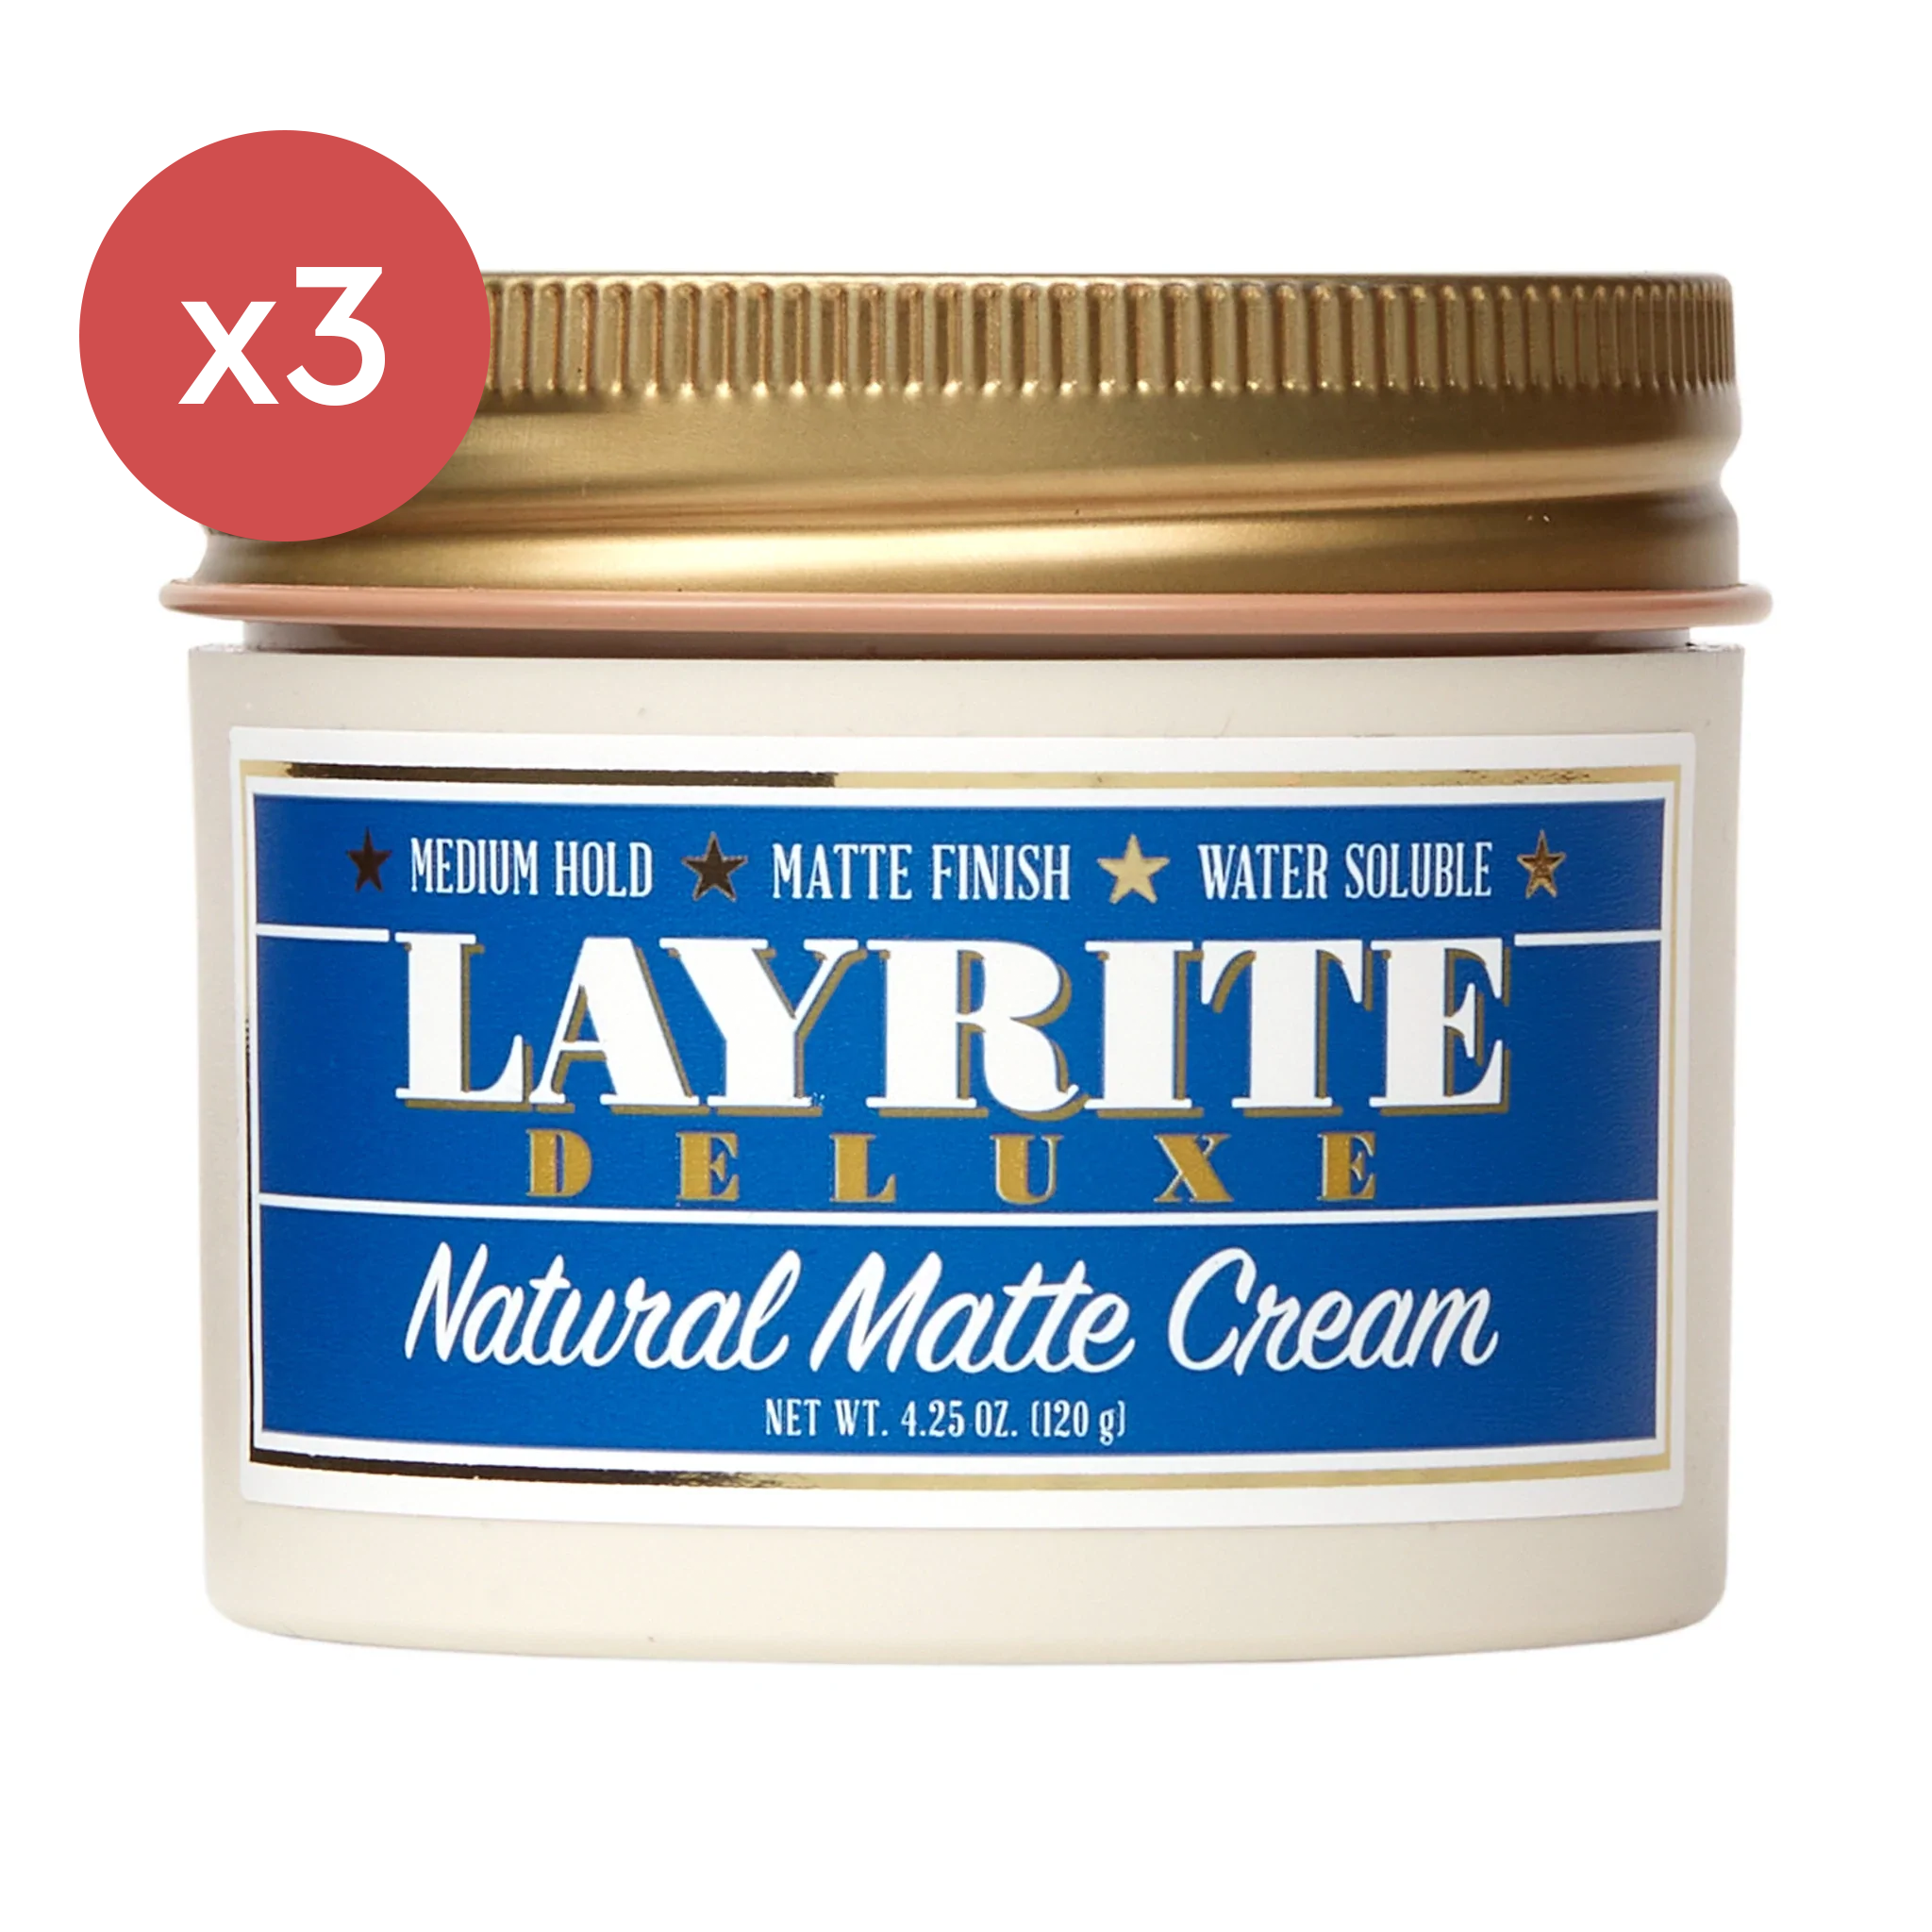 Layrite Natural Matte Cream Trio